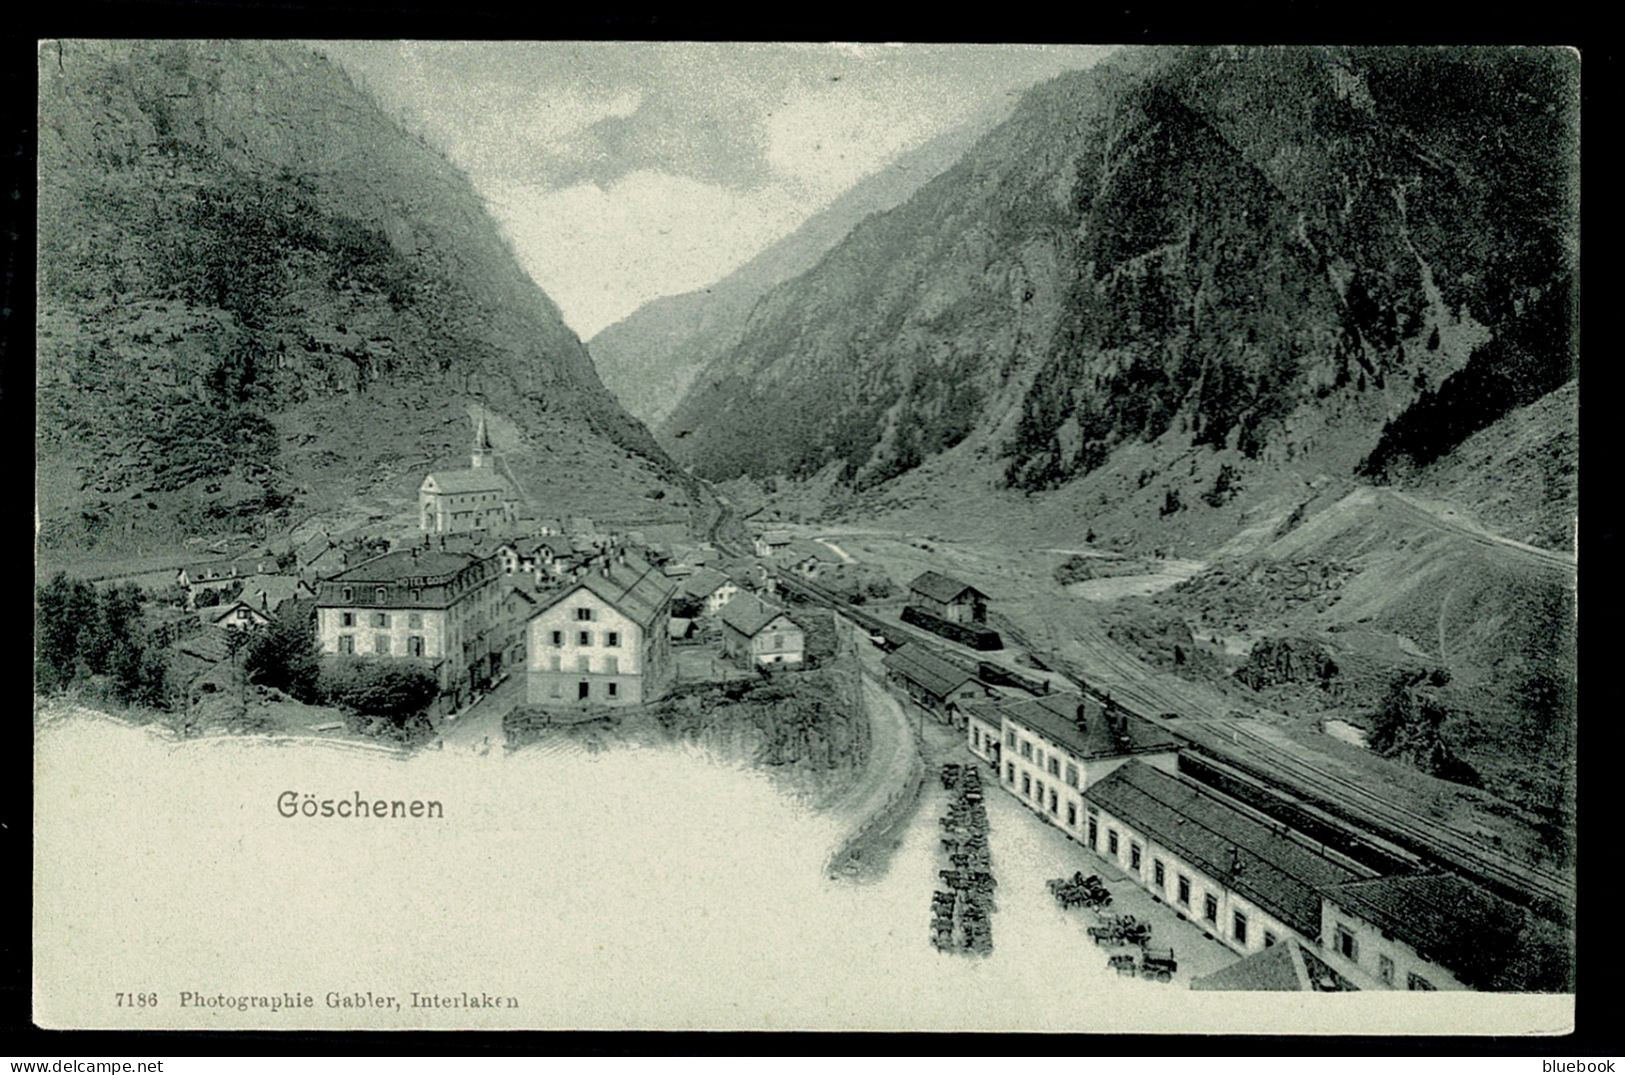 Ref 1623 - Early Postcard - Railway Station & Small Village Of Goschenen - Uri Switzerland - Göschenen